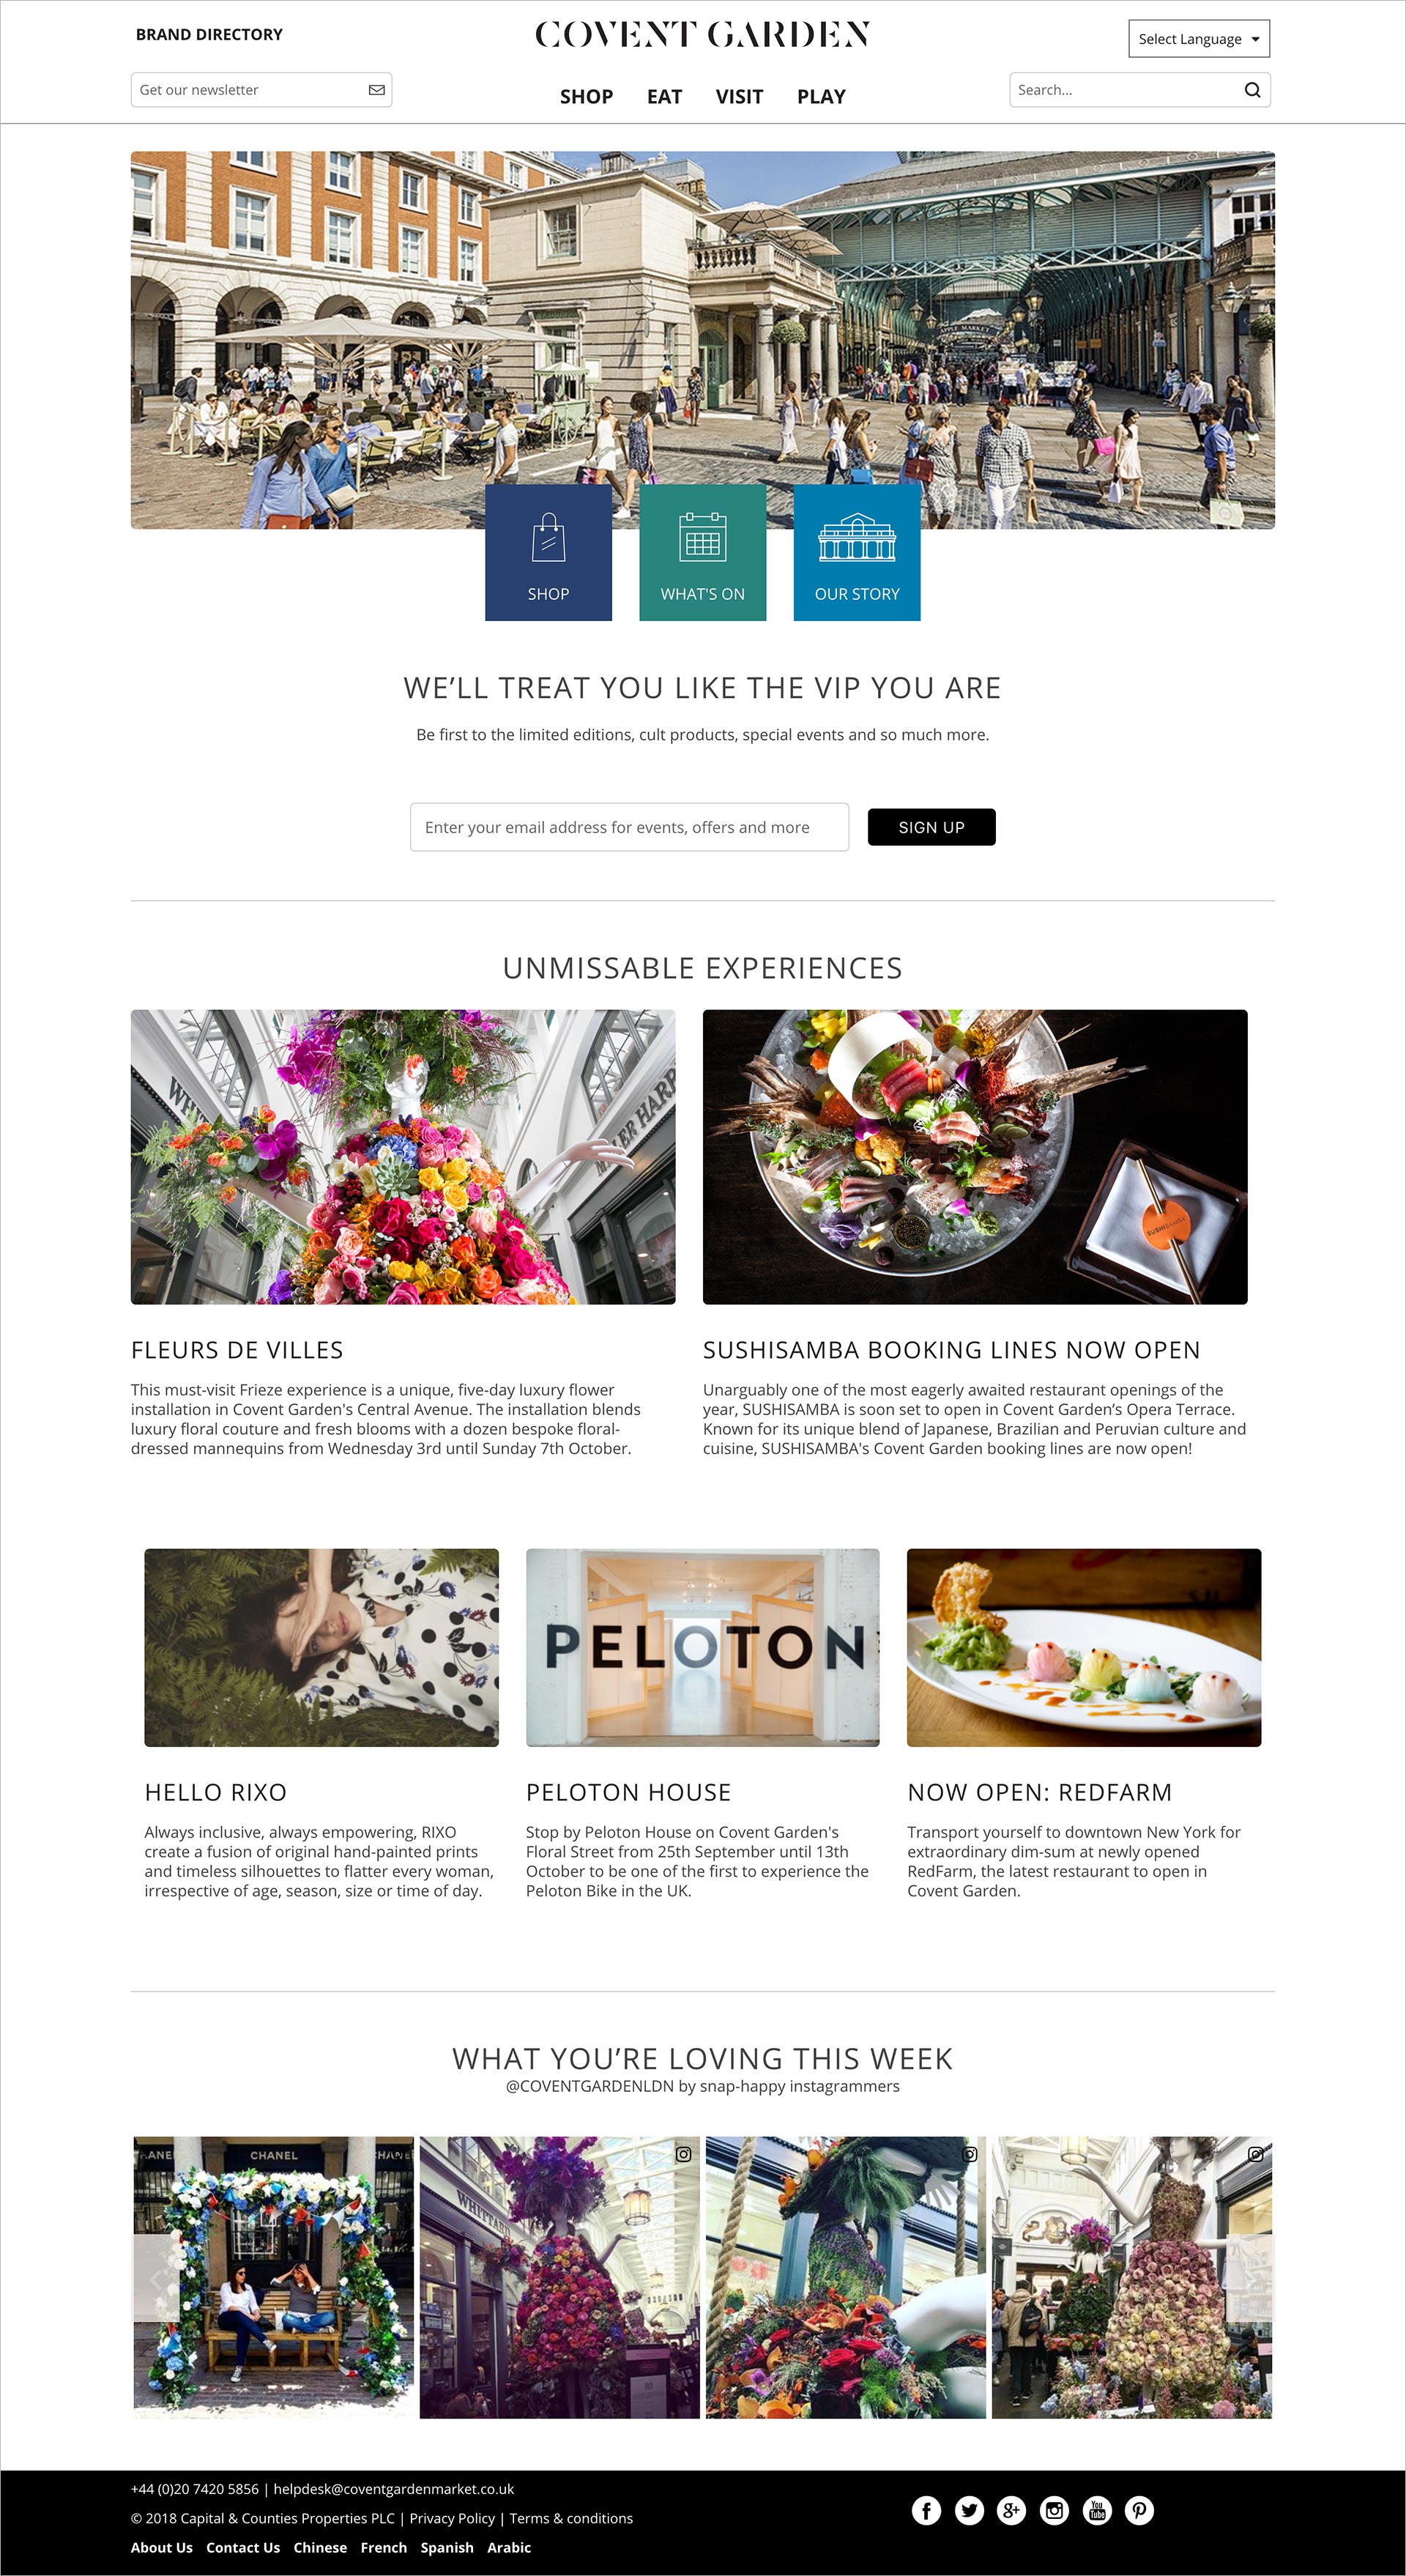 Covent Garden's website homepage